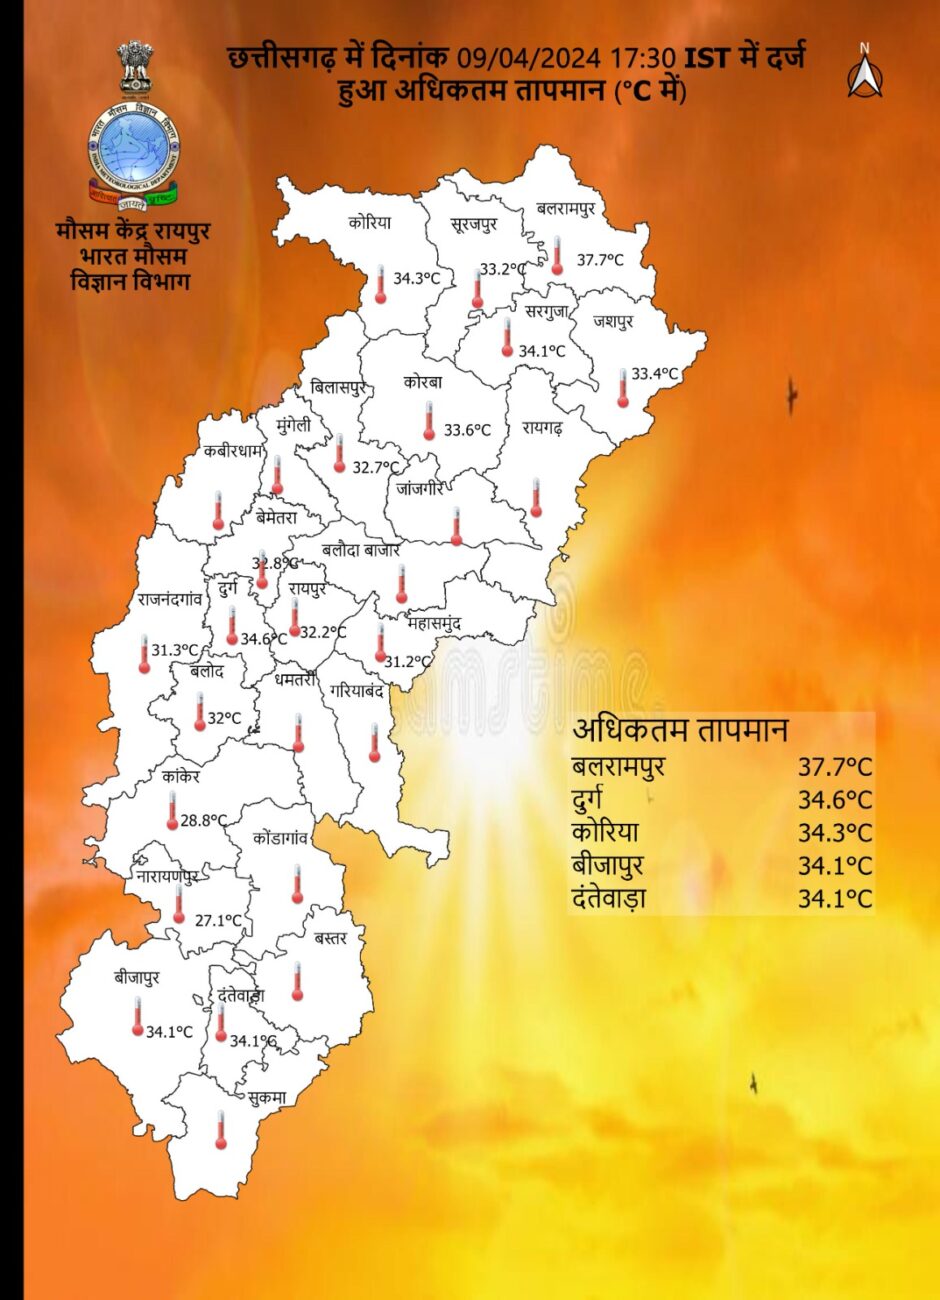 Chhattisgarh Weather : आज सभी संभागों में गरज चमक के साथ बारिश-तेज हवा का अलर्ट, 13 अप्रैल तक वर्षा का दौर, जानें पूरे हफ्ते के मौसम का हाल